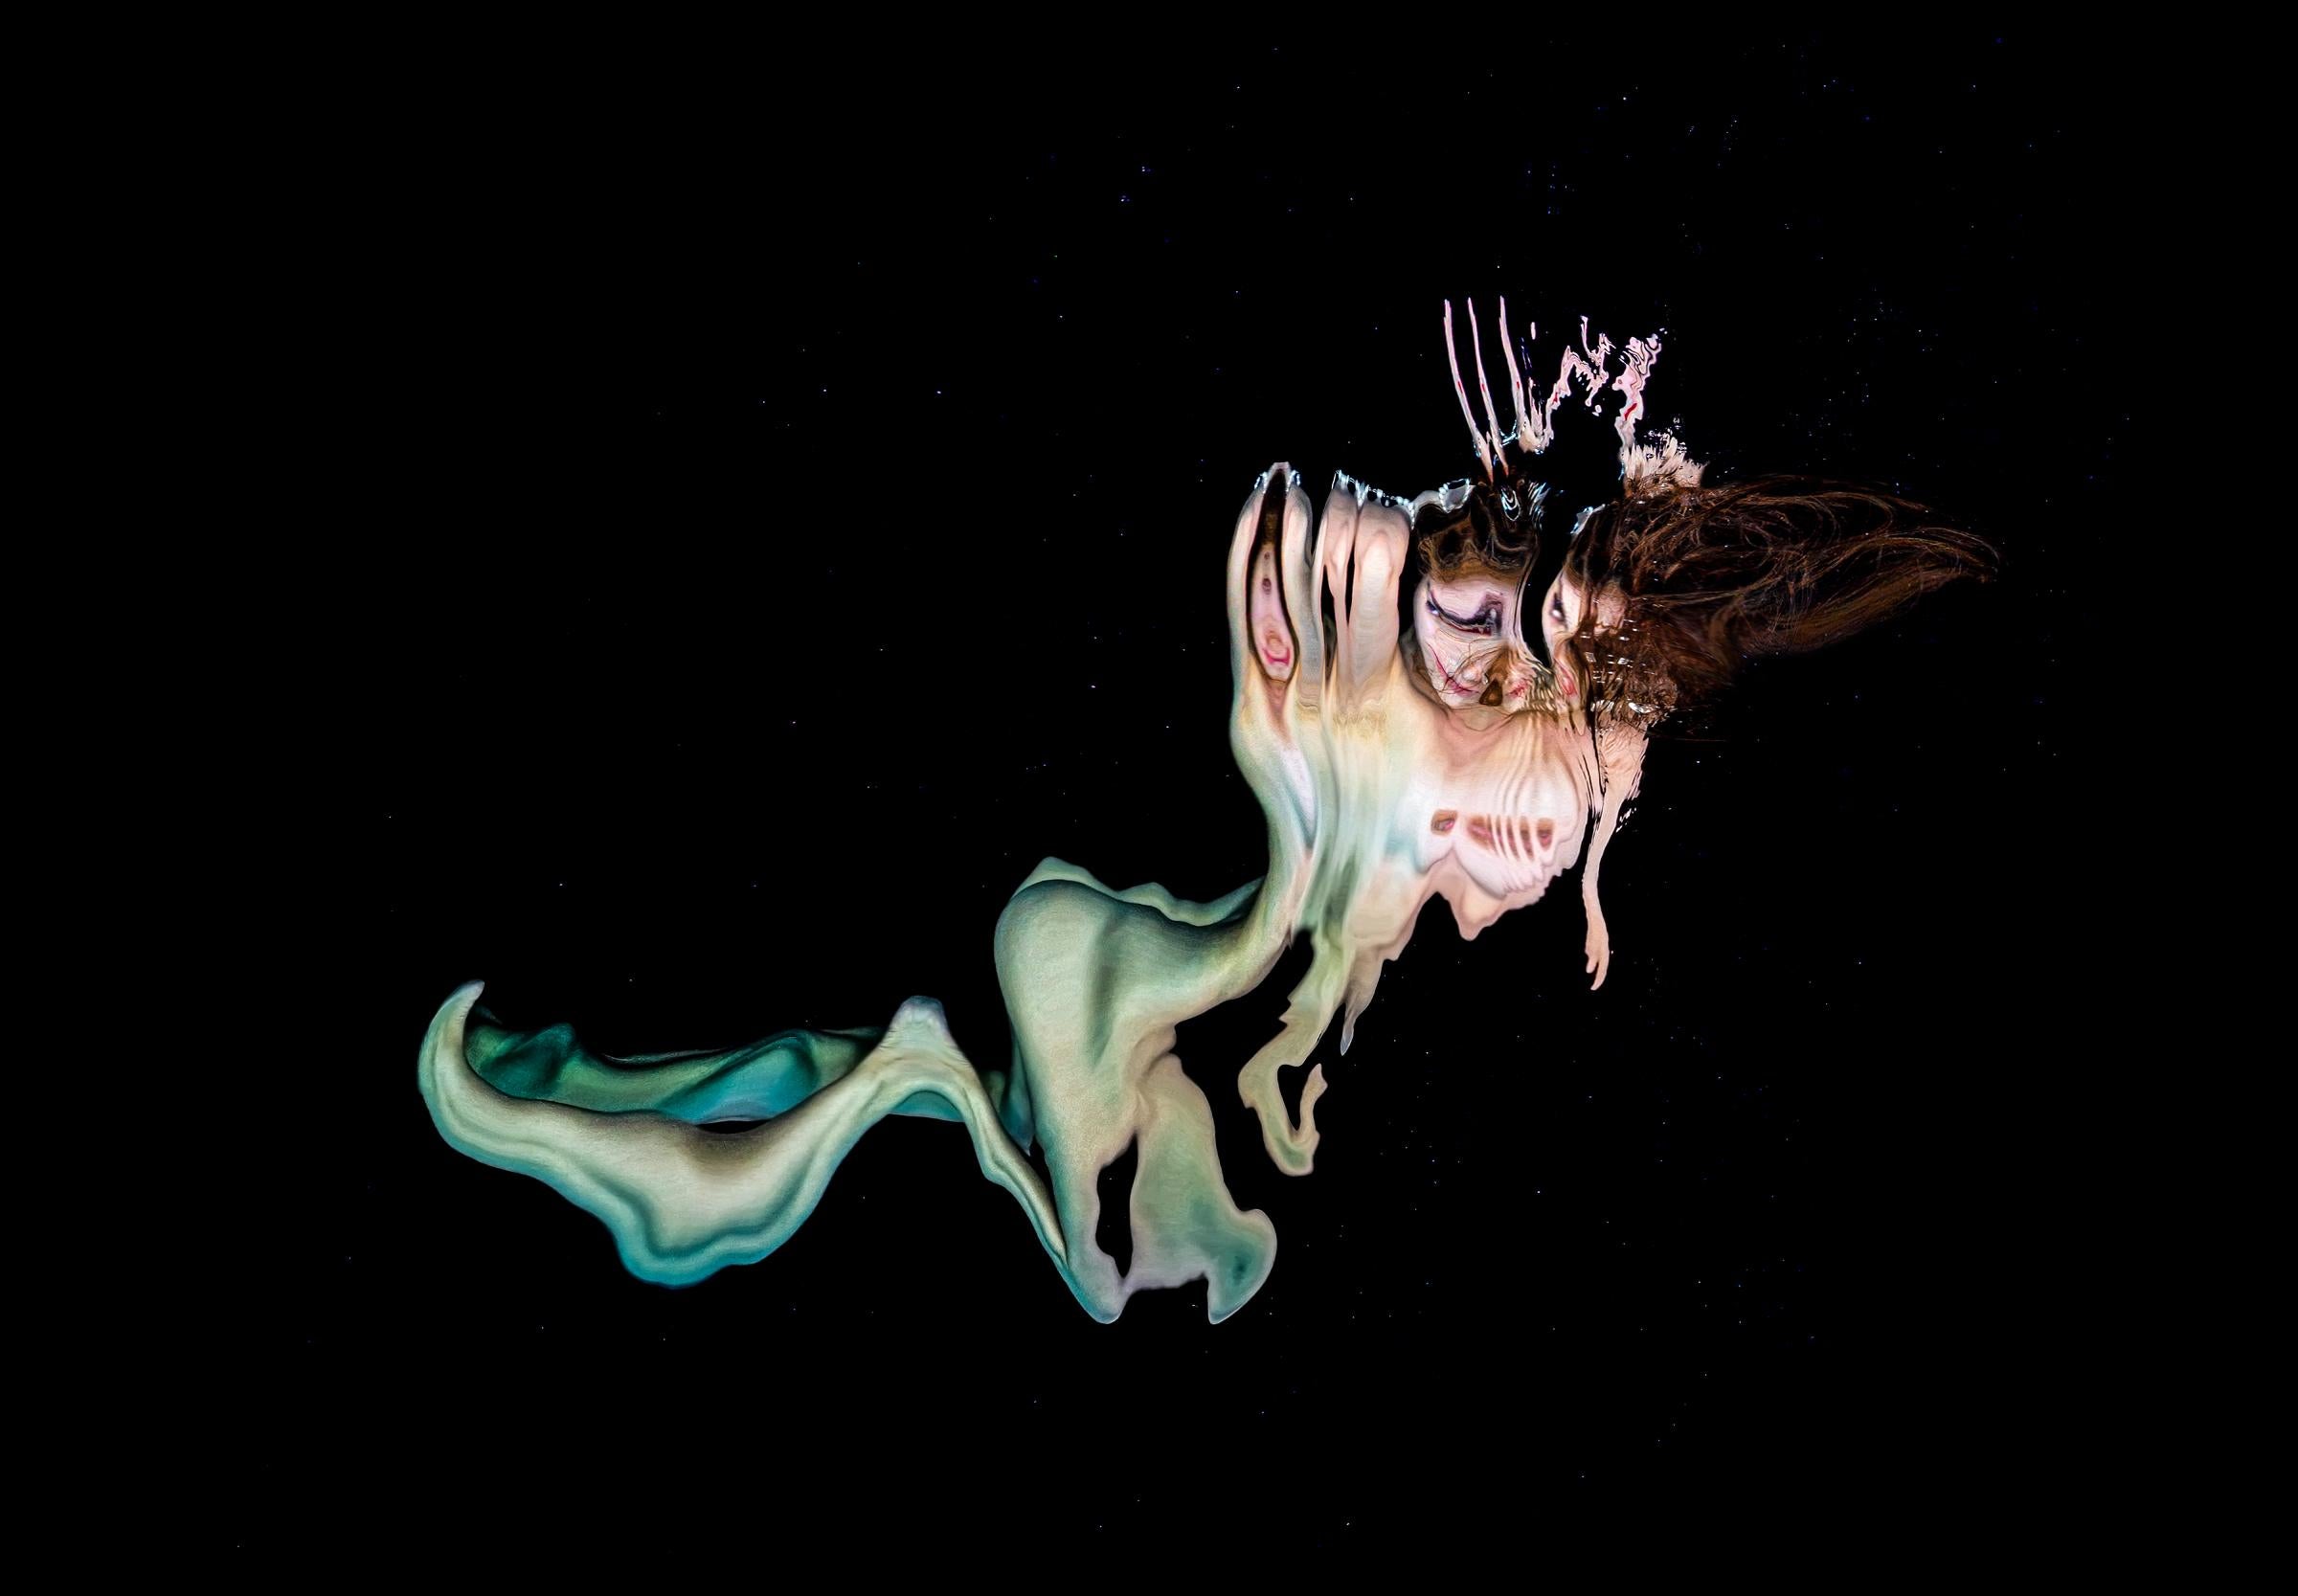 Abstract Photograph Alex Sher - Möbius Mermaid - photographie de nu sous-marine - REFLECTIONS - pigment d'archive